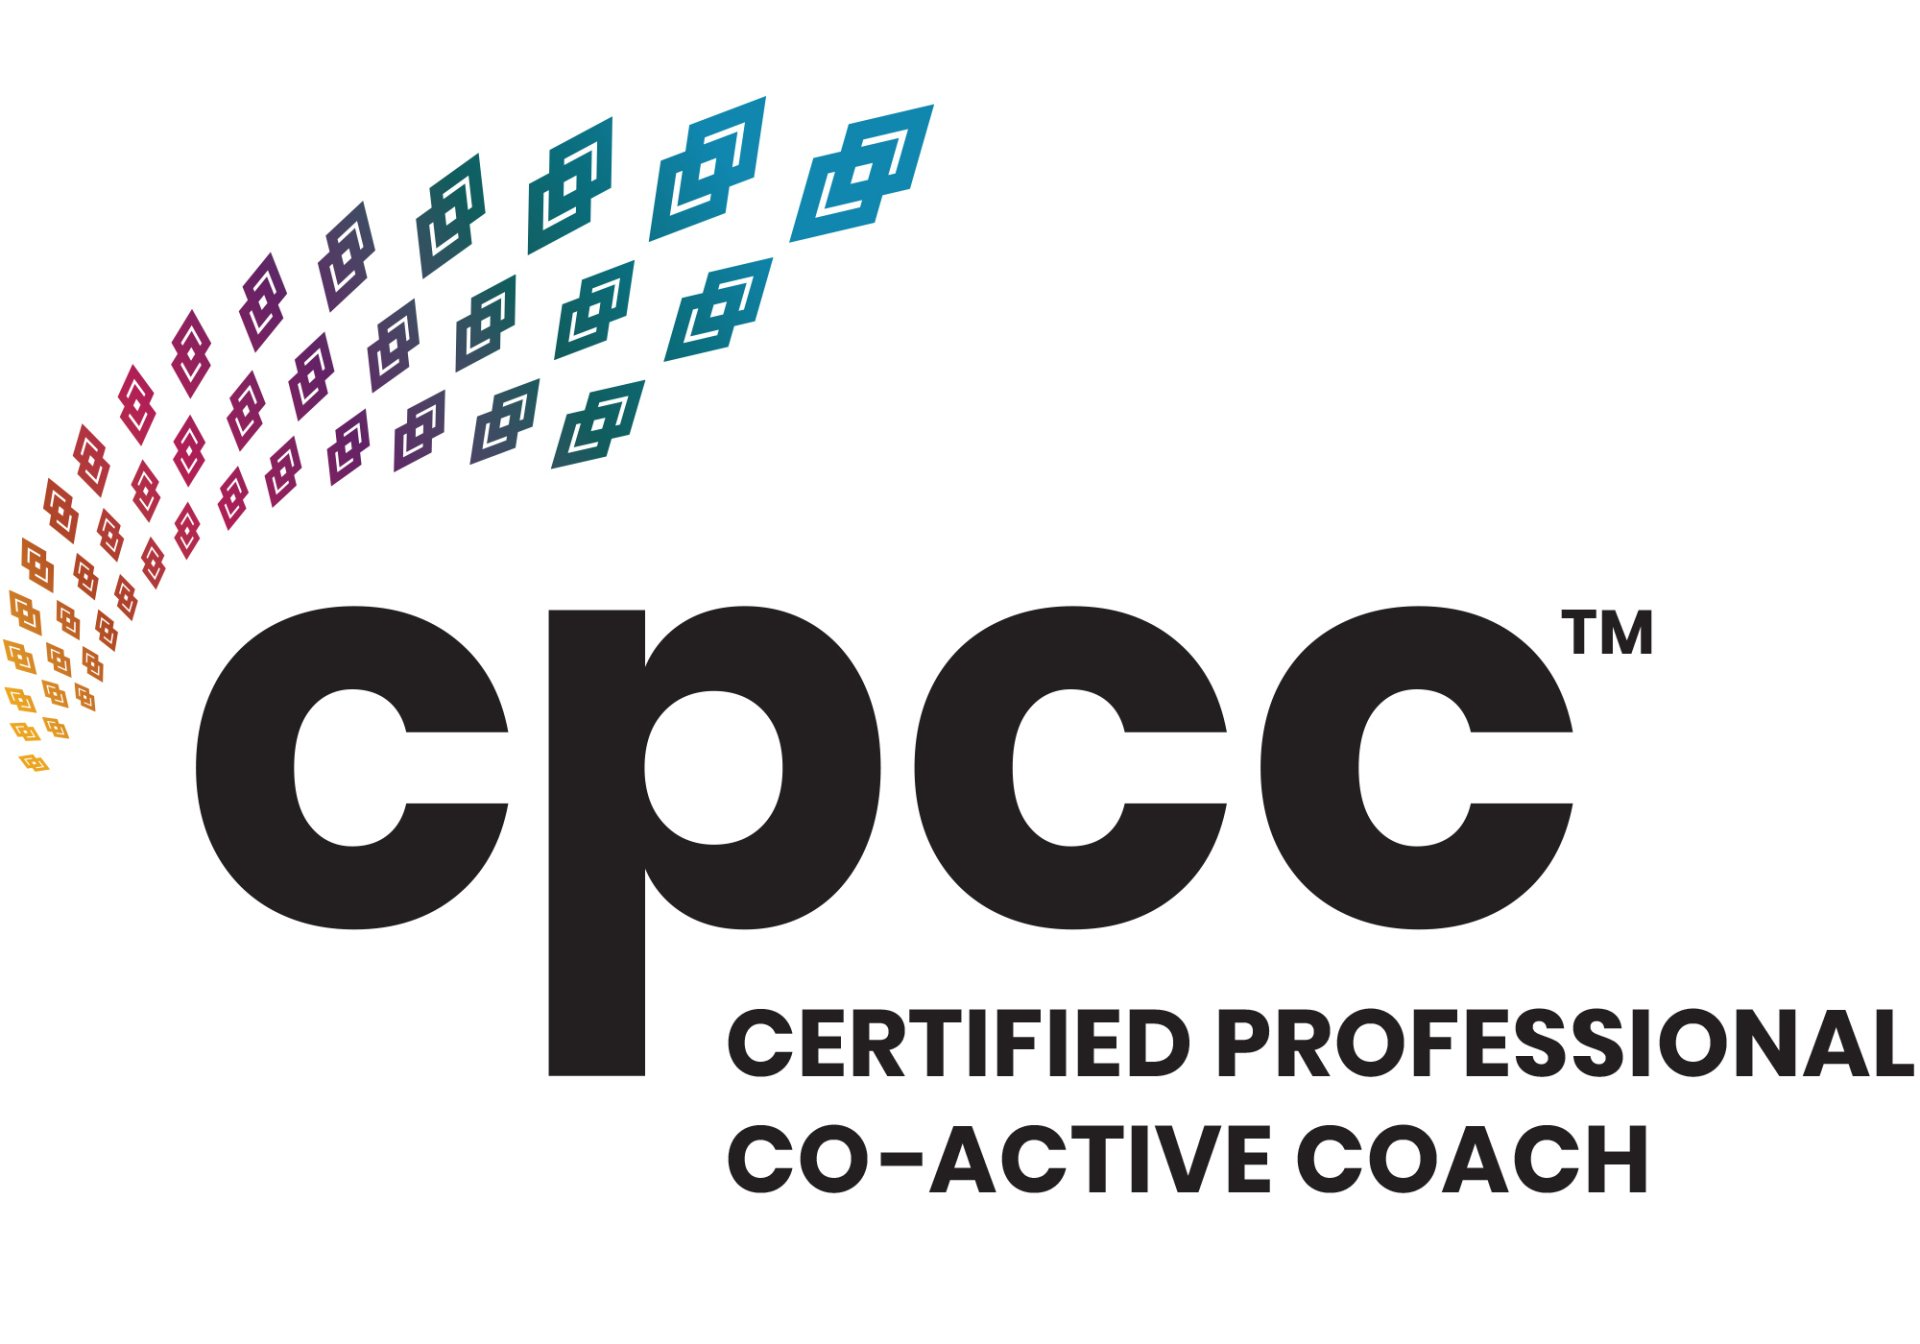 Barbara Gerhards ist CPCC zertifiziert: Certified Professional Co-Active Coach von der größten internationalen Coaching Schule The Coaches Training Institute in den USA